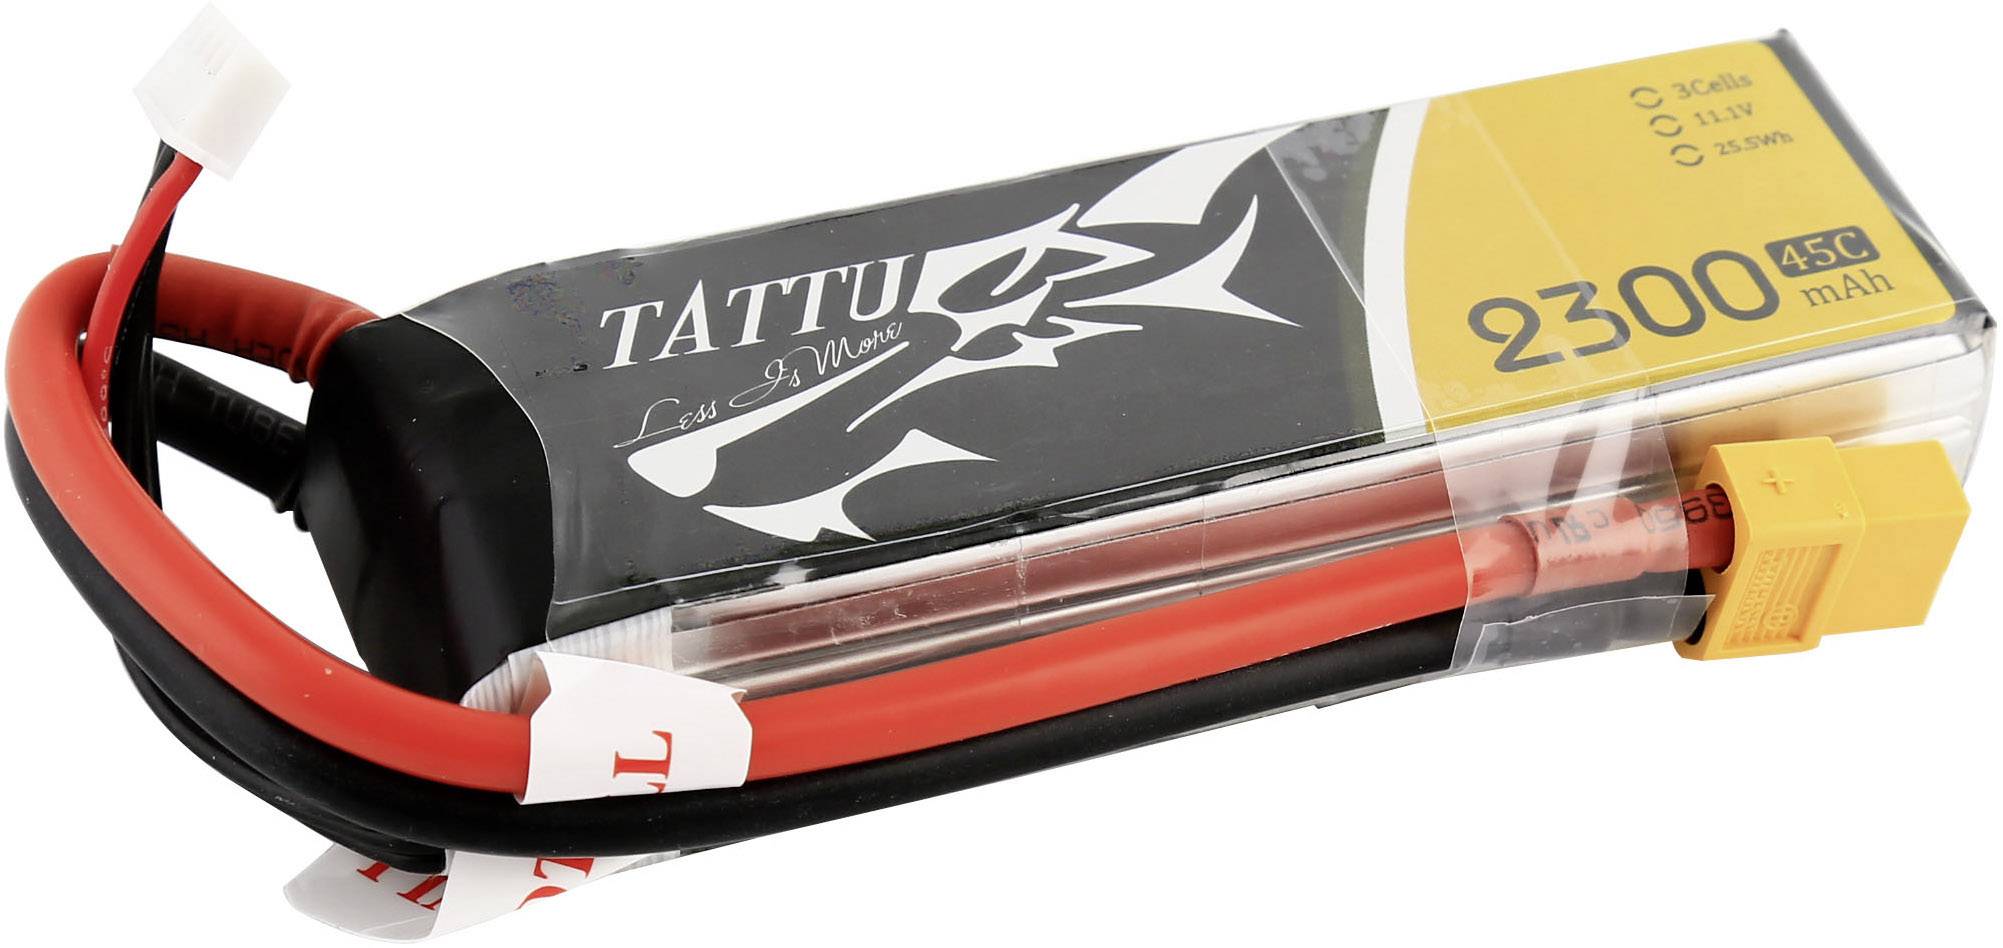 Batterie LiPo Tattu 3S 2300 mAh 45C (XT60)